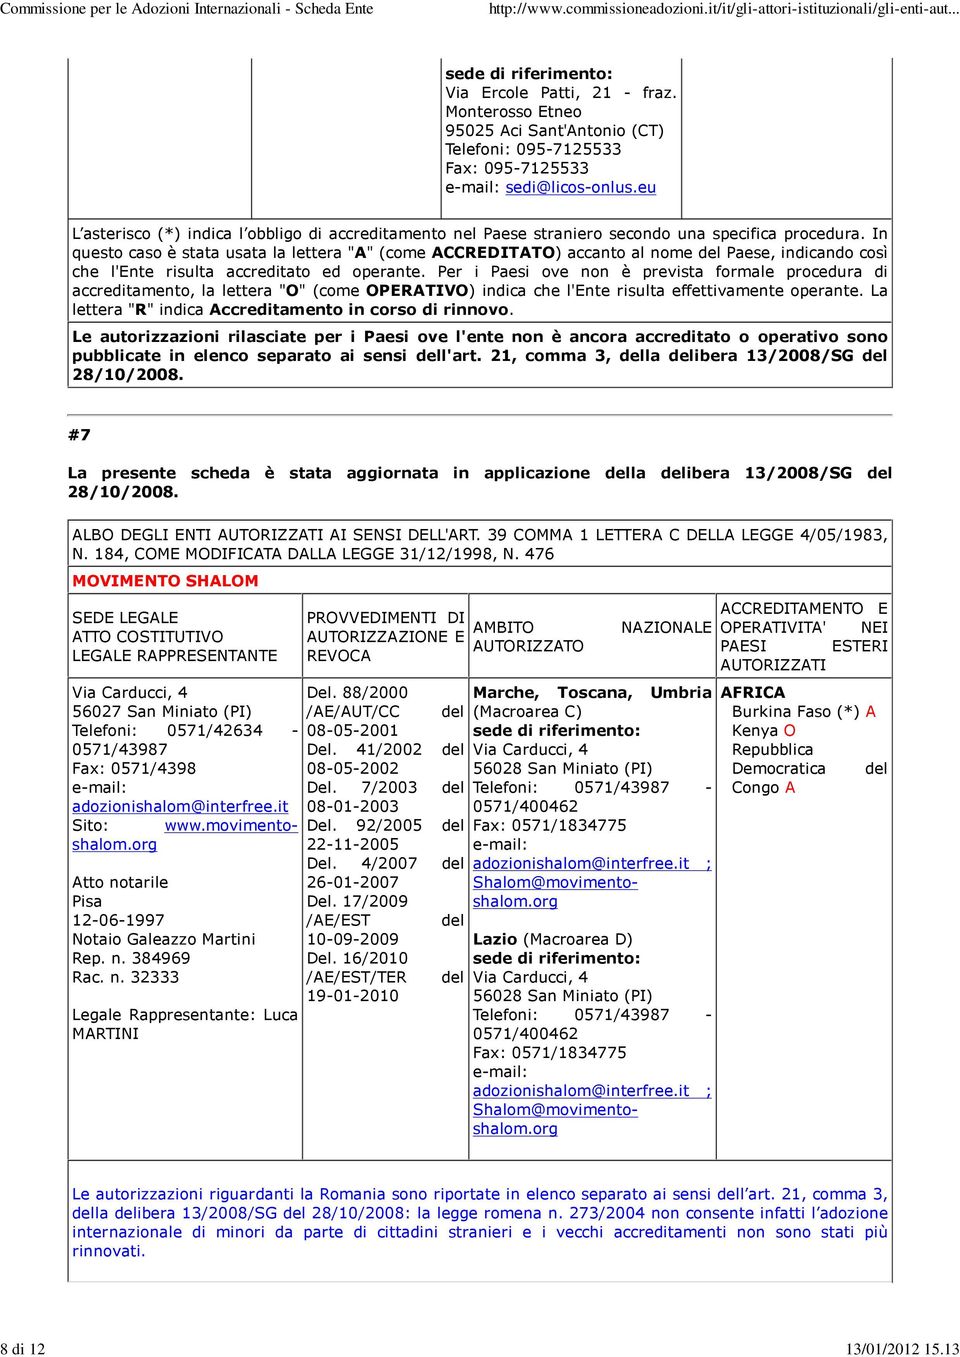 org Pisa 12-06-1997 Notaio Galeazzo Martini Rep. n. 384969 Rac. n. 32333 Legale Rappresentante: Luca MARTINI Del. 88/2000 /AE/AUT/CC del 08-05-2001 Del. 41/2002 del 08-05-2002 Del.